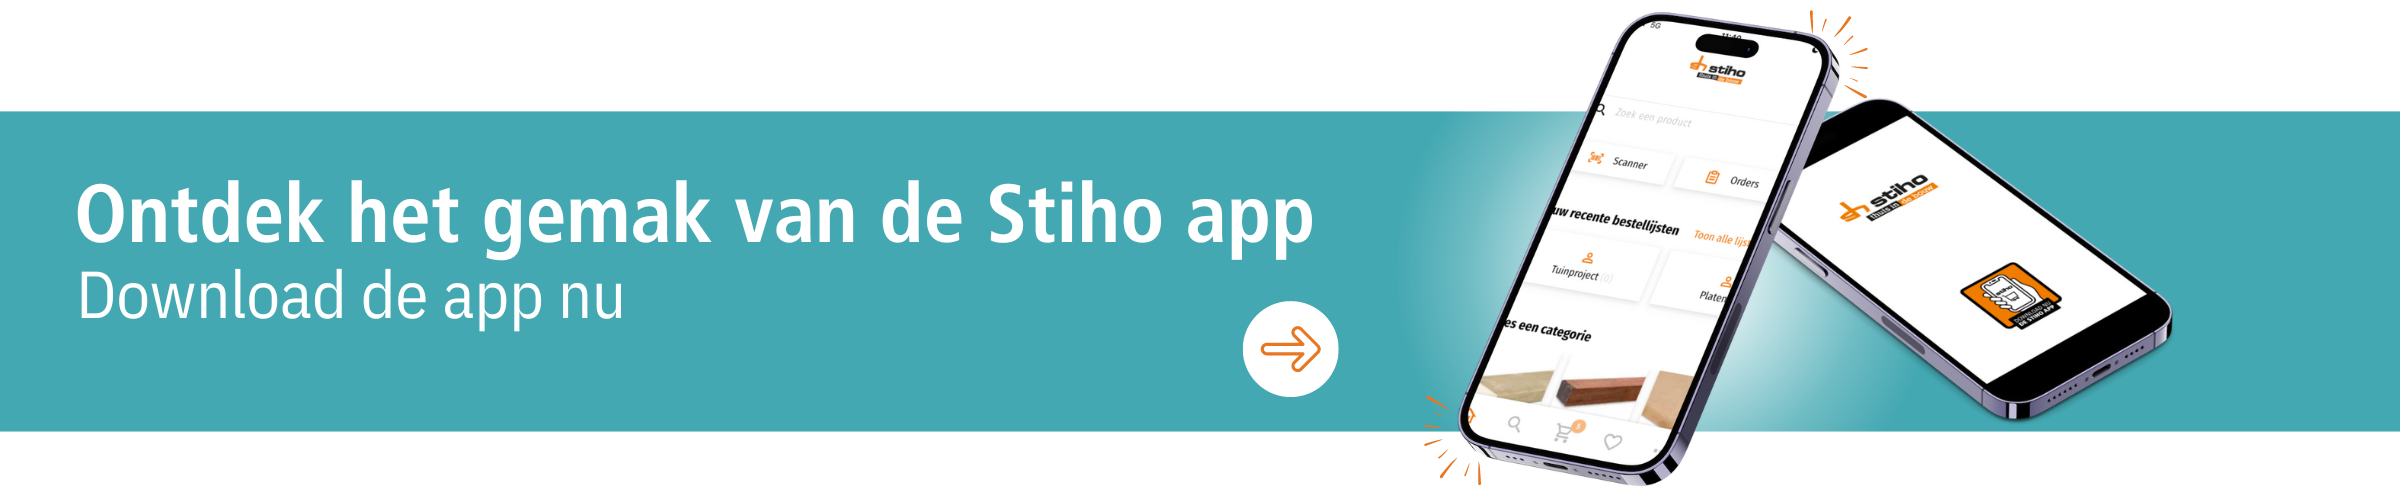 Bestel gemakkelijk via de Stiho app